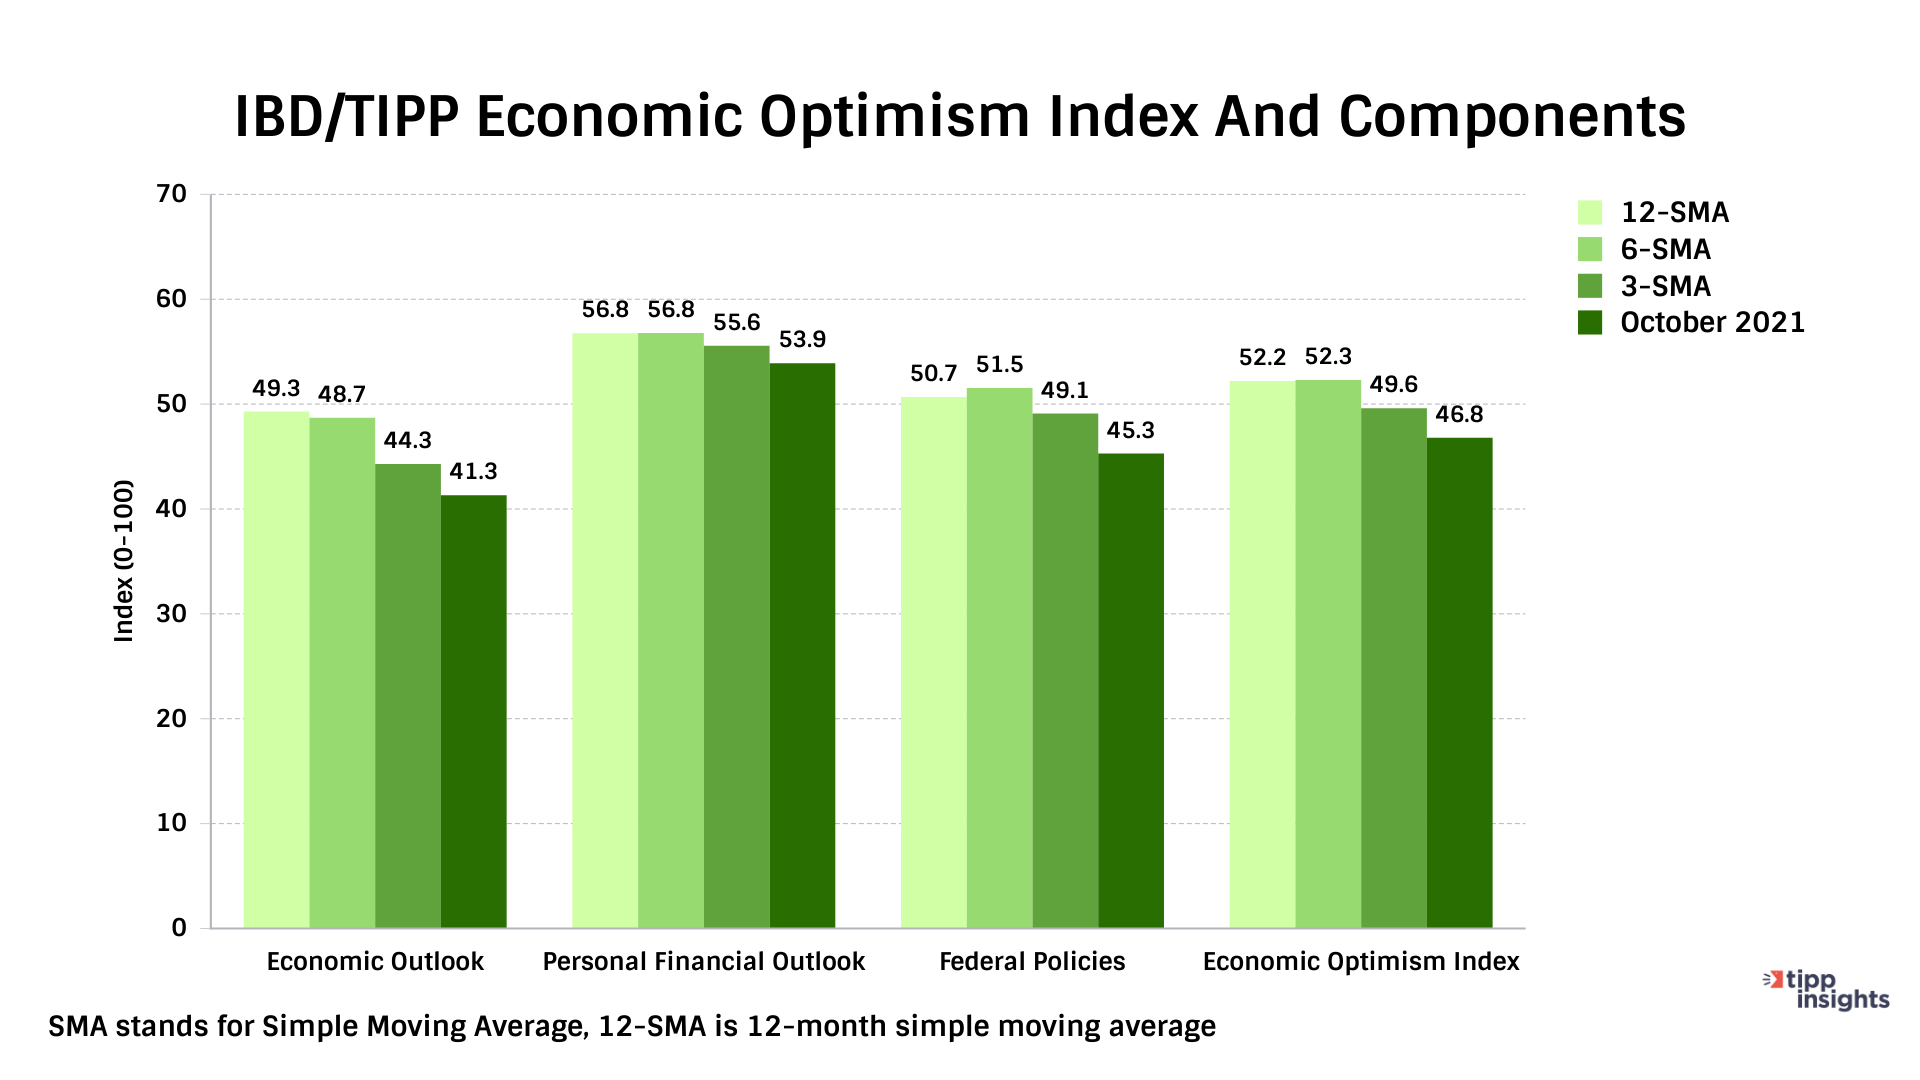 IBD/TIPP Economic Optimism Index 12 month simple moving average